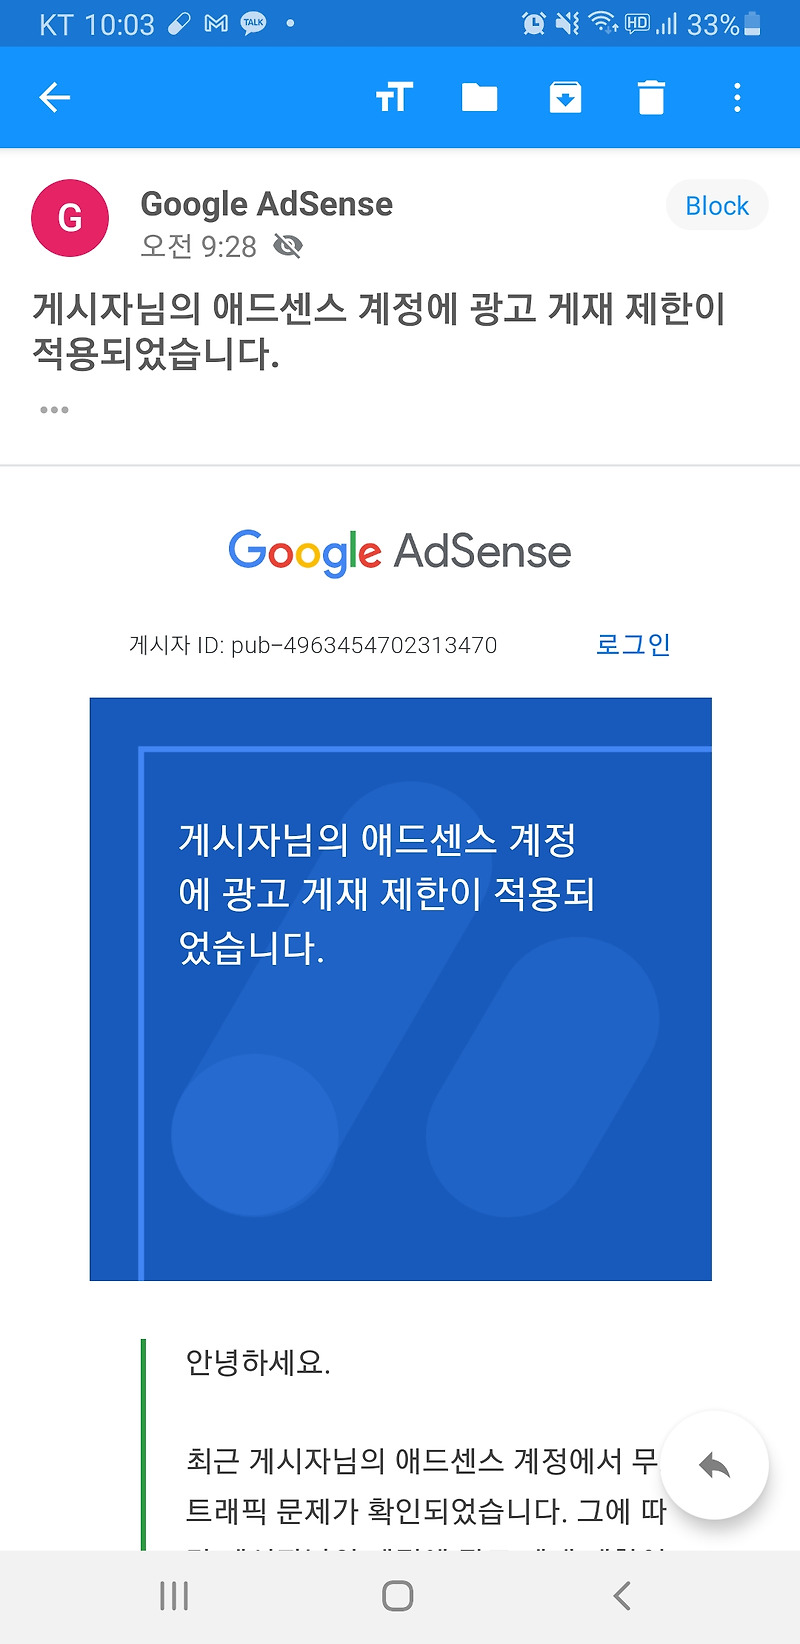 [정보] 이보시오 구글양반 애드센스 광고 게재 제한이라니오